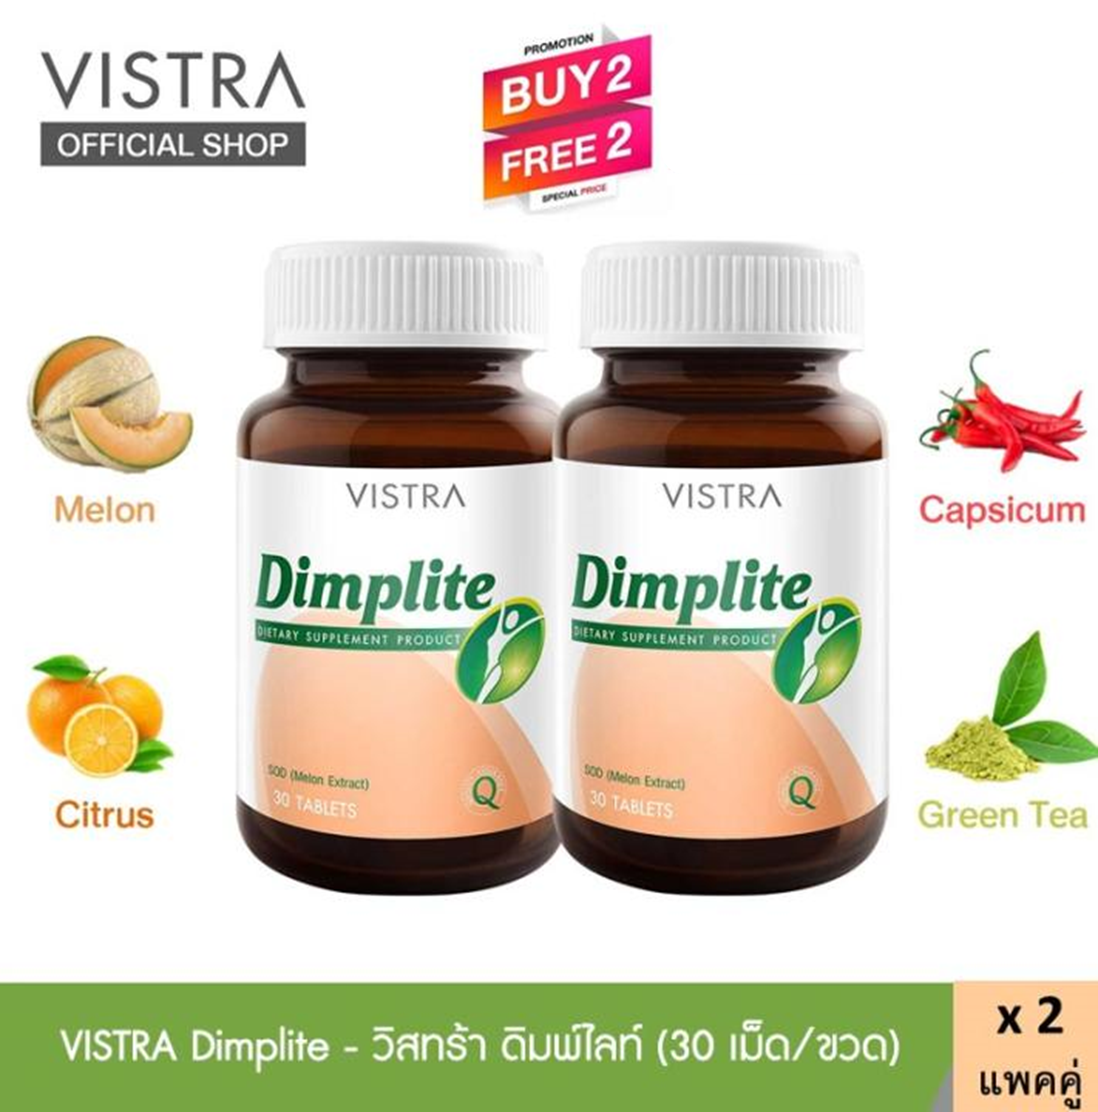 VISTRA Dimplite - วิสทร้า ดิมพ์ไลท์  สารสกัดจาก เมล่อน SOD  ส้ม พริก ชาเขียว (30 เม็ด/ขวด) (แพคคู่ 2 ขวด ) (2 ฟรี 2 = 4 ขวด)  ผลิตใหม่ หมดอายุปี 2023